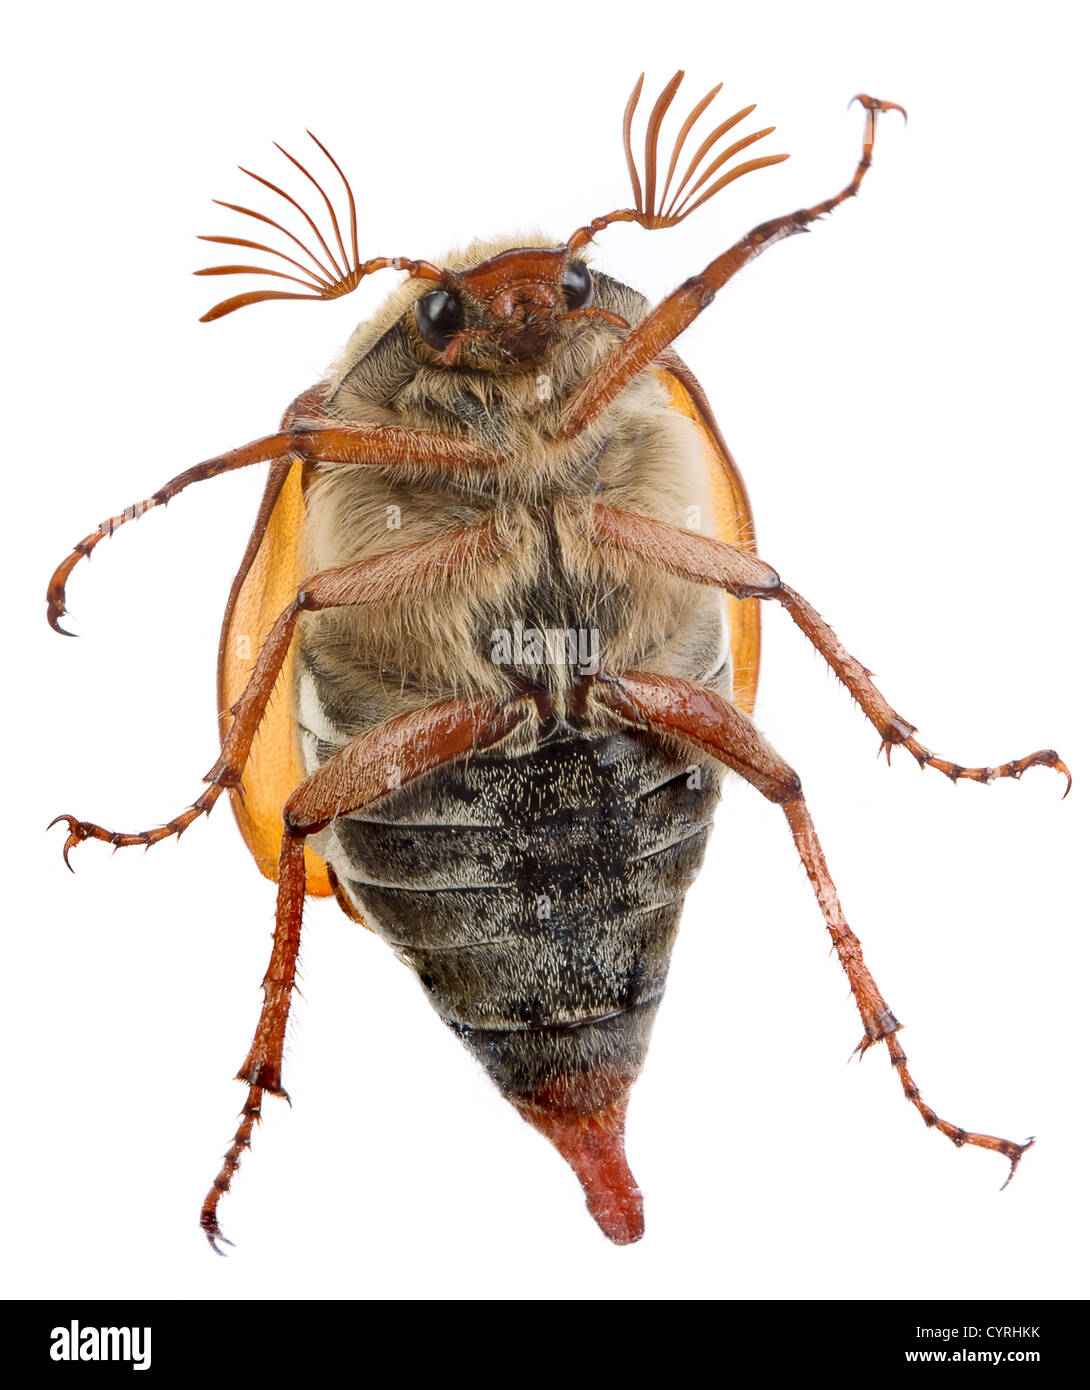 Maybug beetle de ramper sur une vitre Banque D'Images